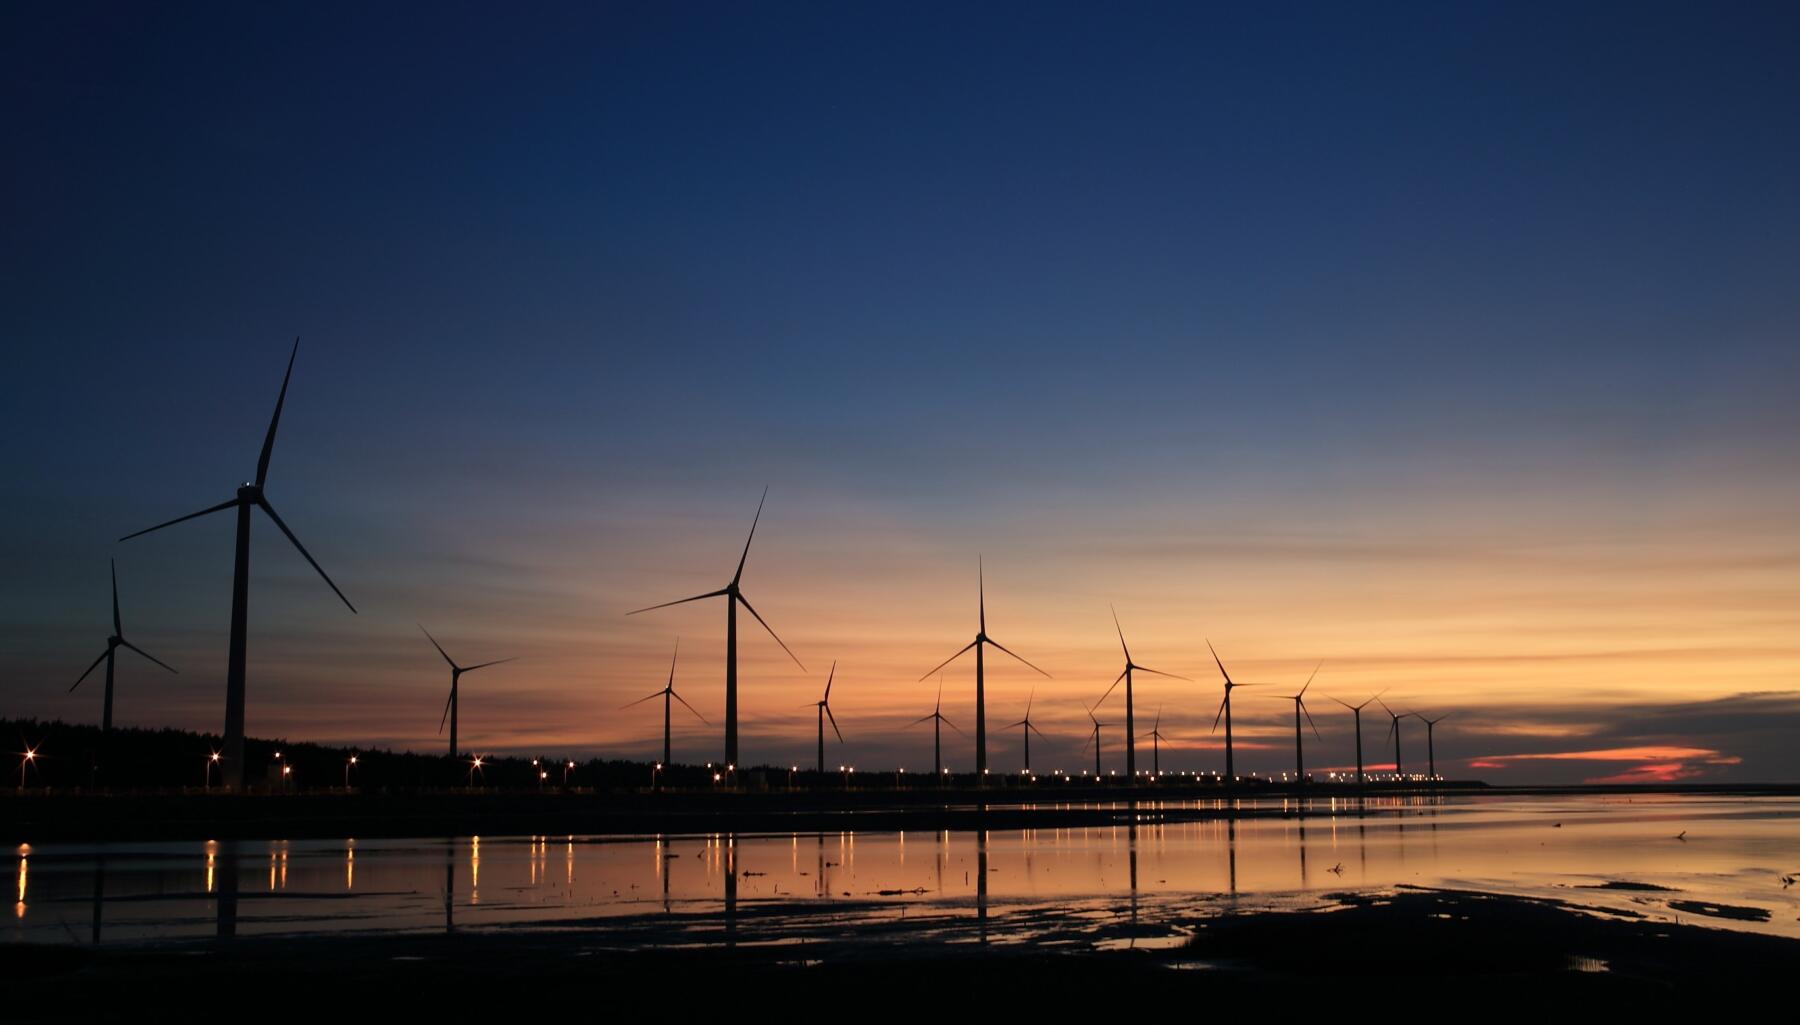 Saipem e Cnr lanciano un progetto di ricerca strategico sulle energie rinnovabili offshore